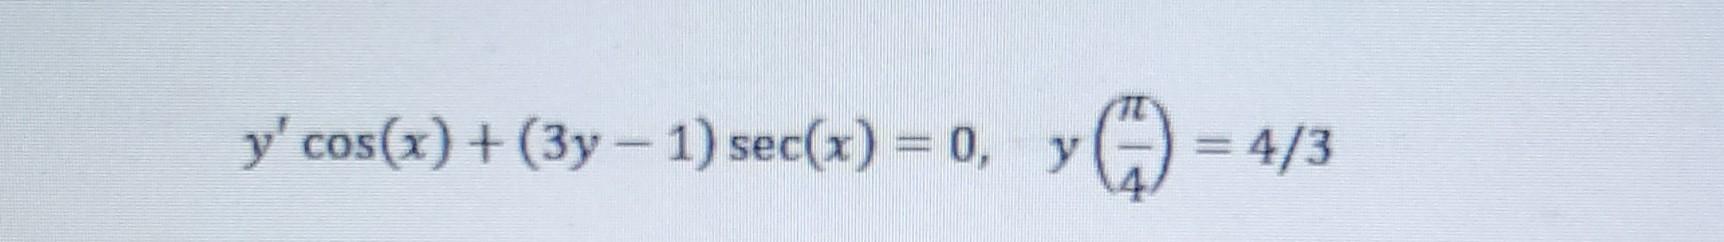 y' cos(x) + (3y-1) sec(x) = 0, y Y G = 4/3